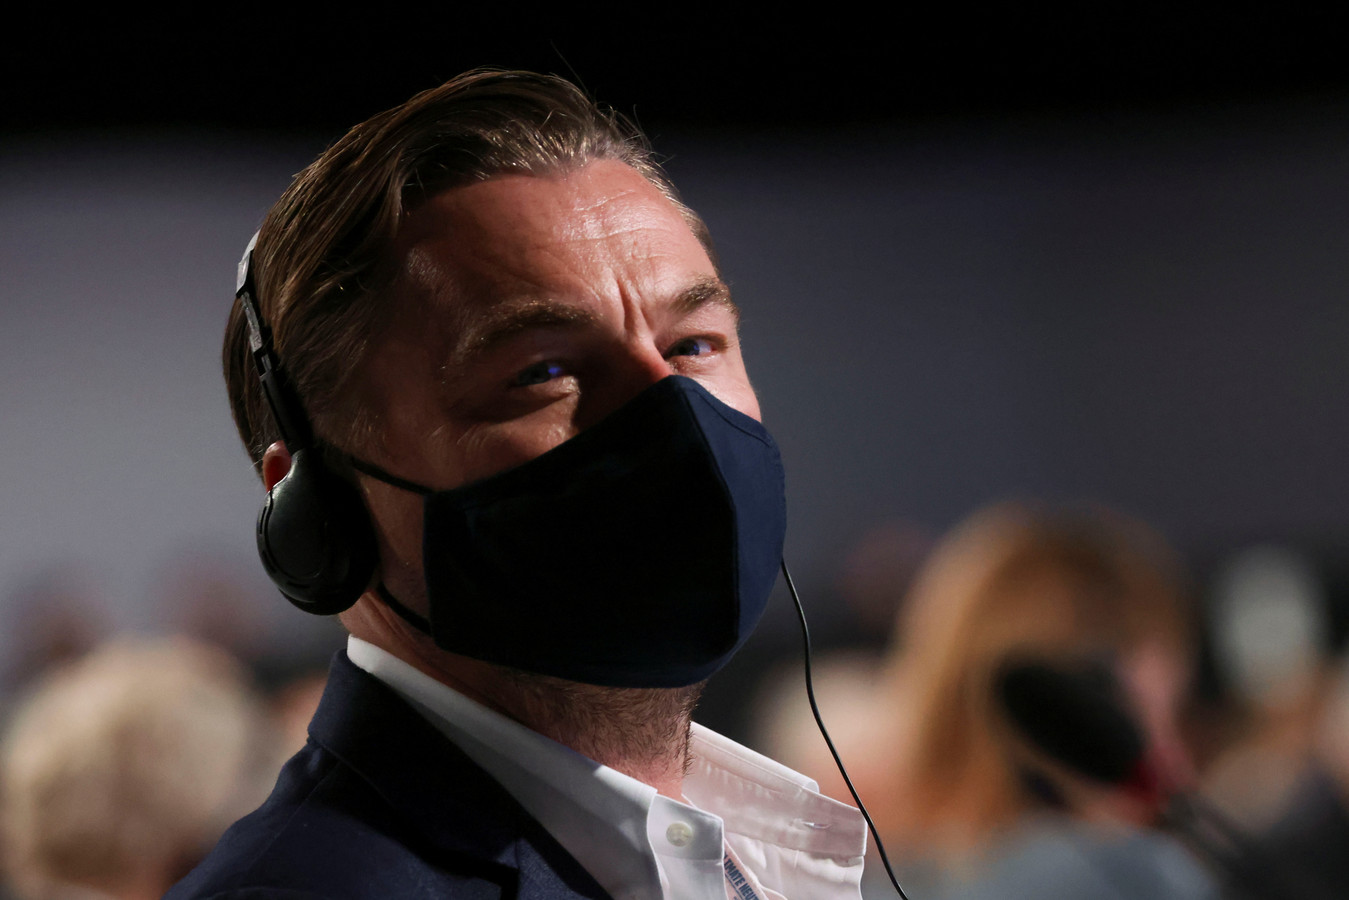 L'acteur Leonardo DiCaprio a assisté à une réunion lors de la Conférence des Nations unies sur le changement climatique (COP26) à Glasgow, en Écosse.